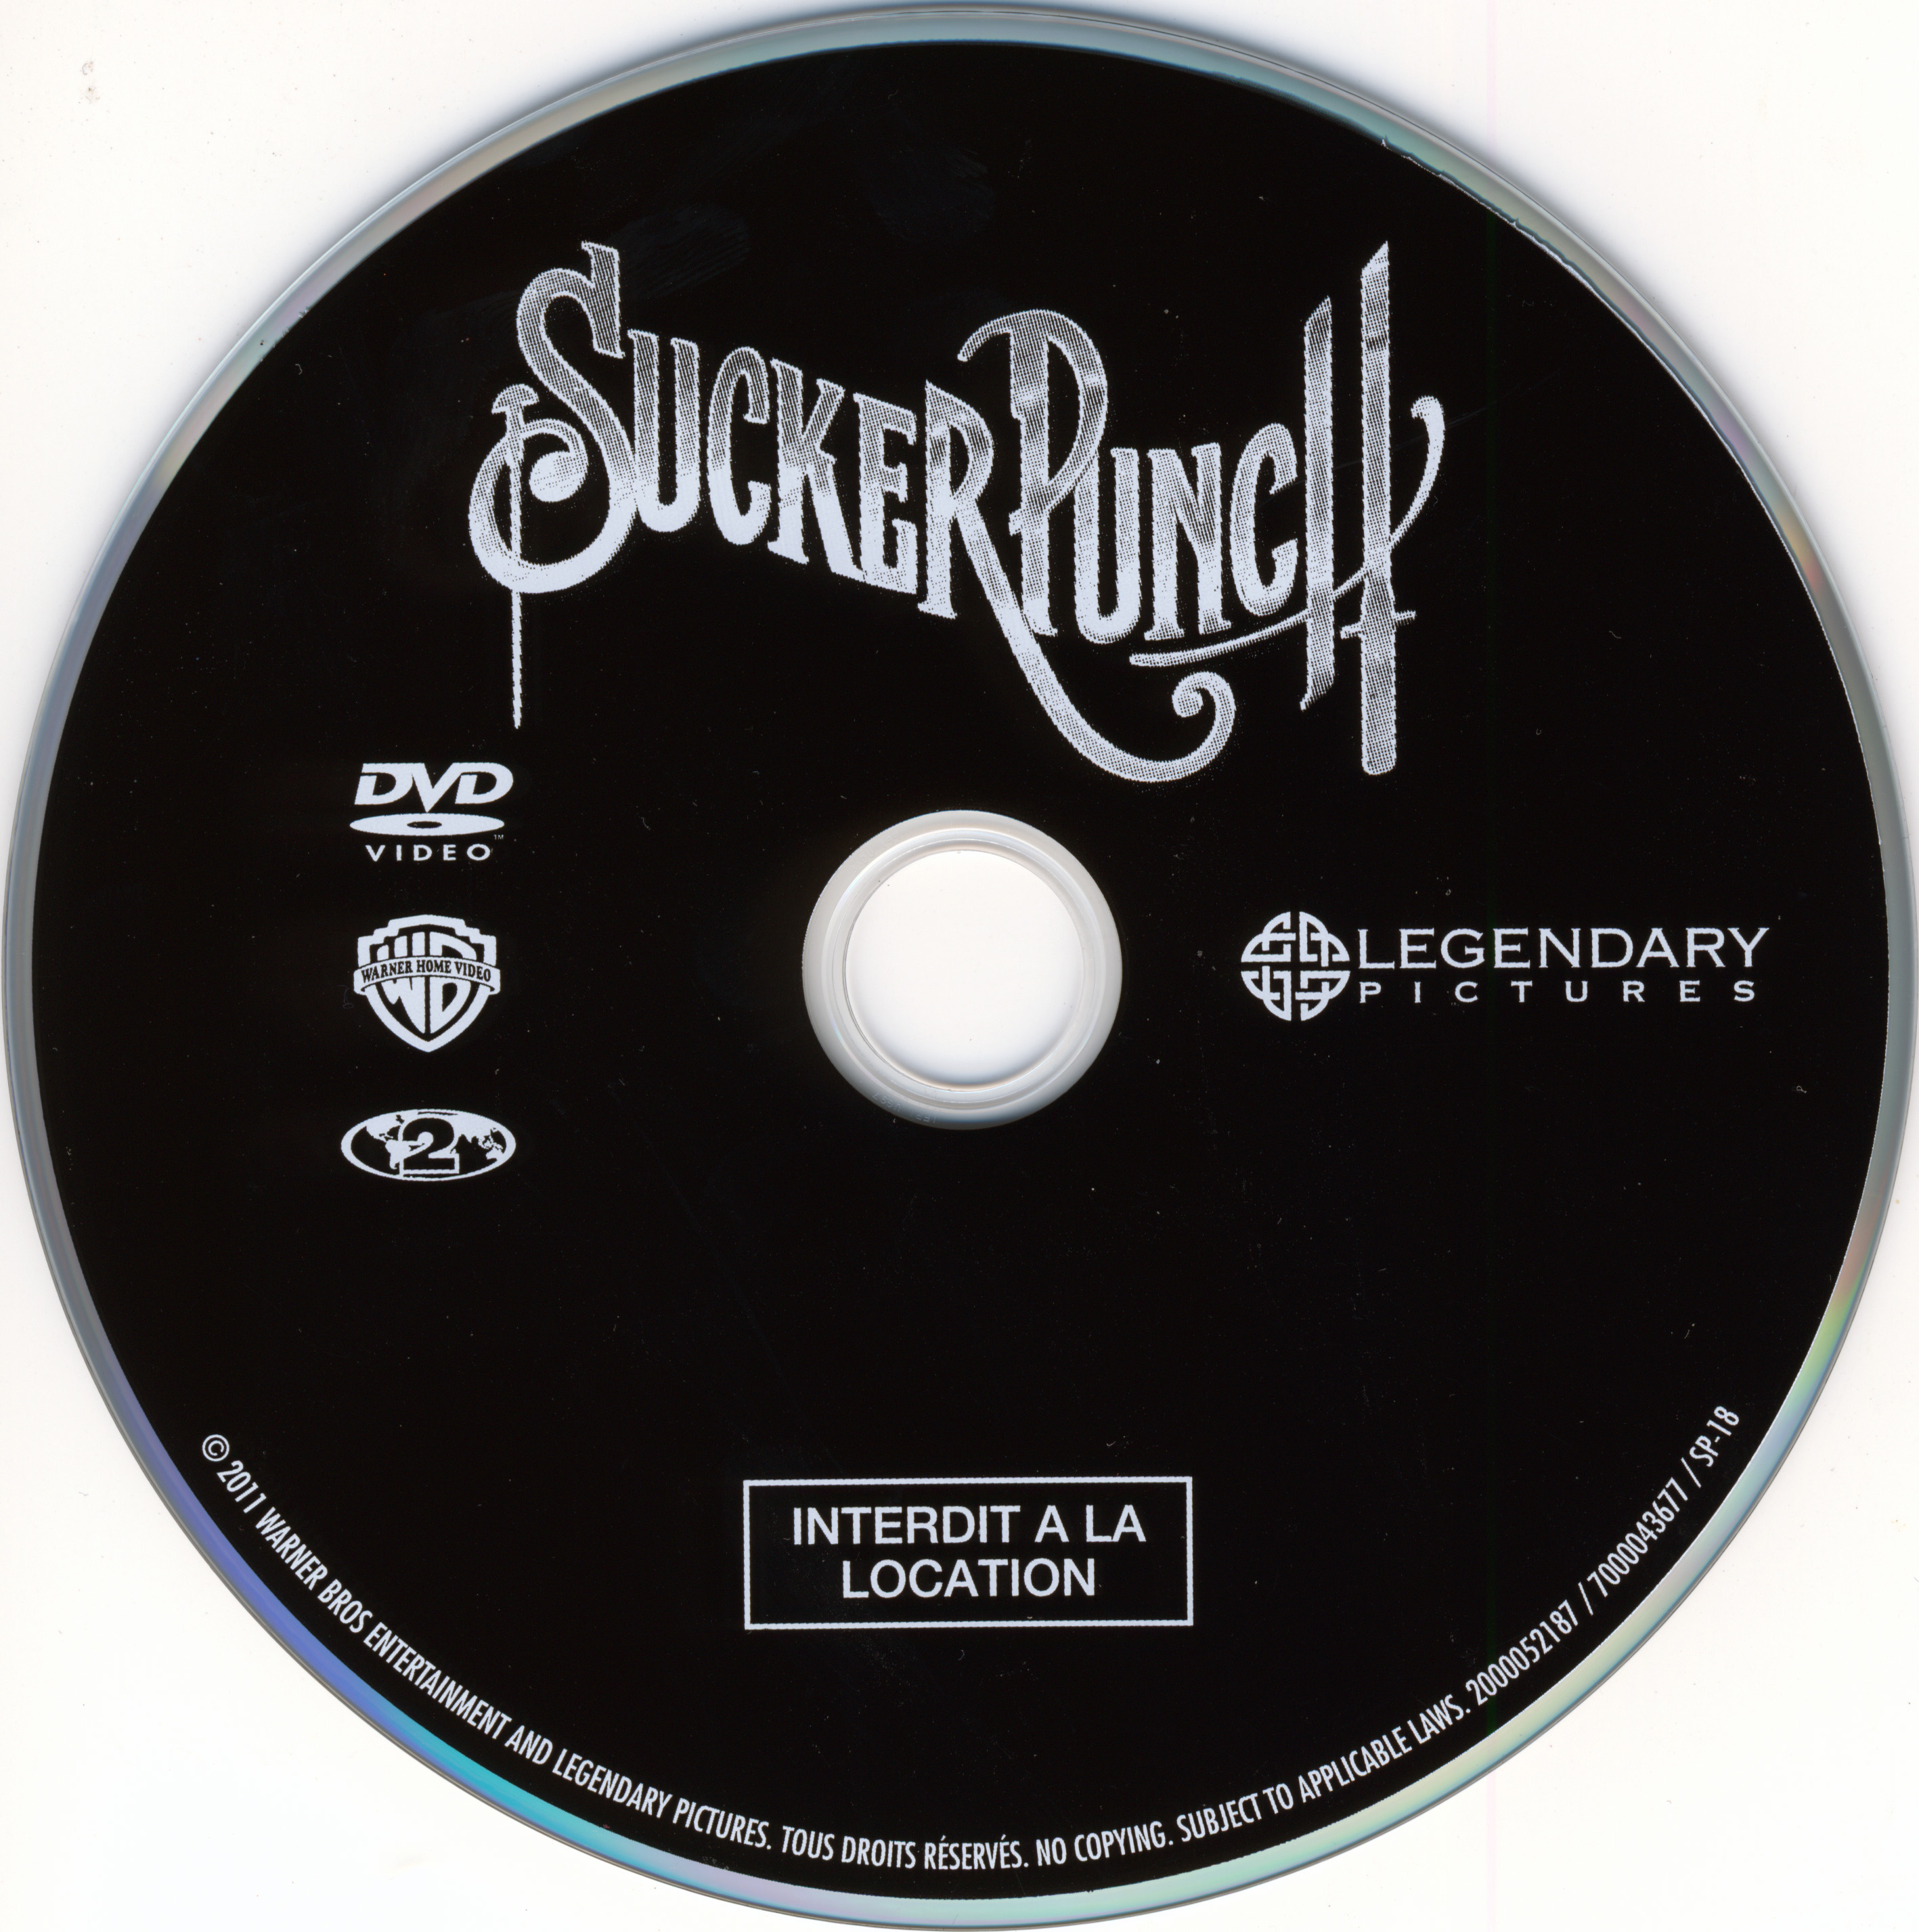 Sucker punch